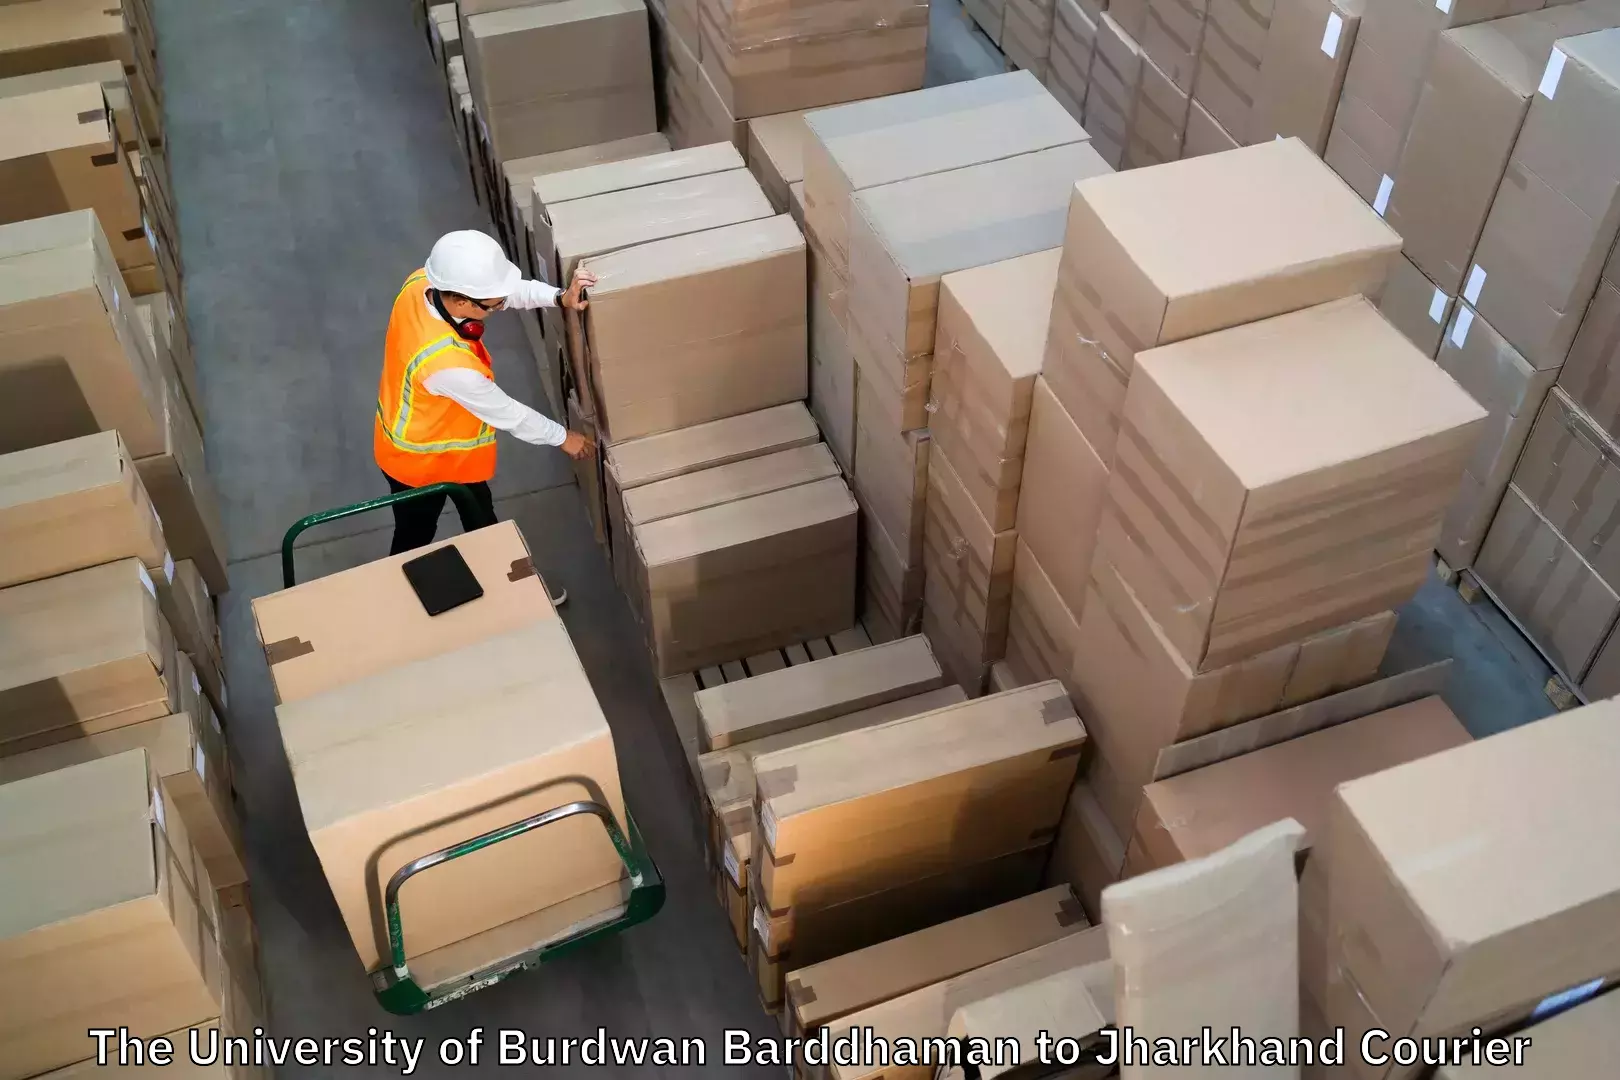 Baggage transport estimate The University of Burdwan Barddhaman to Lohardaga